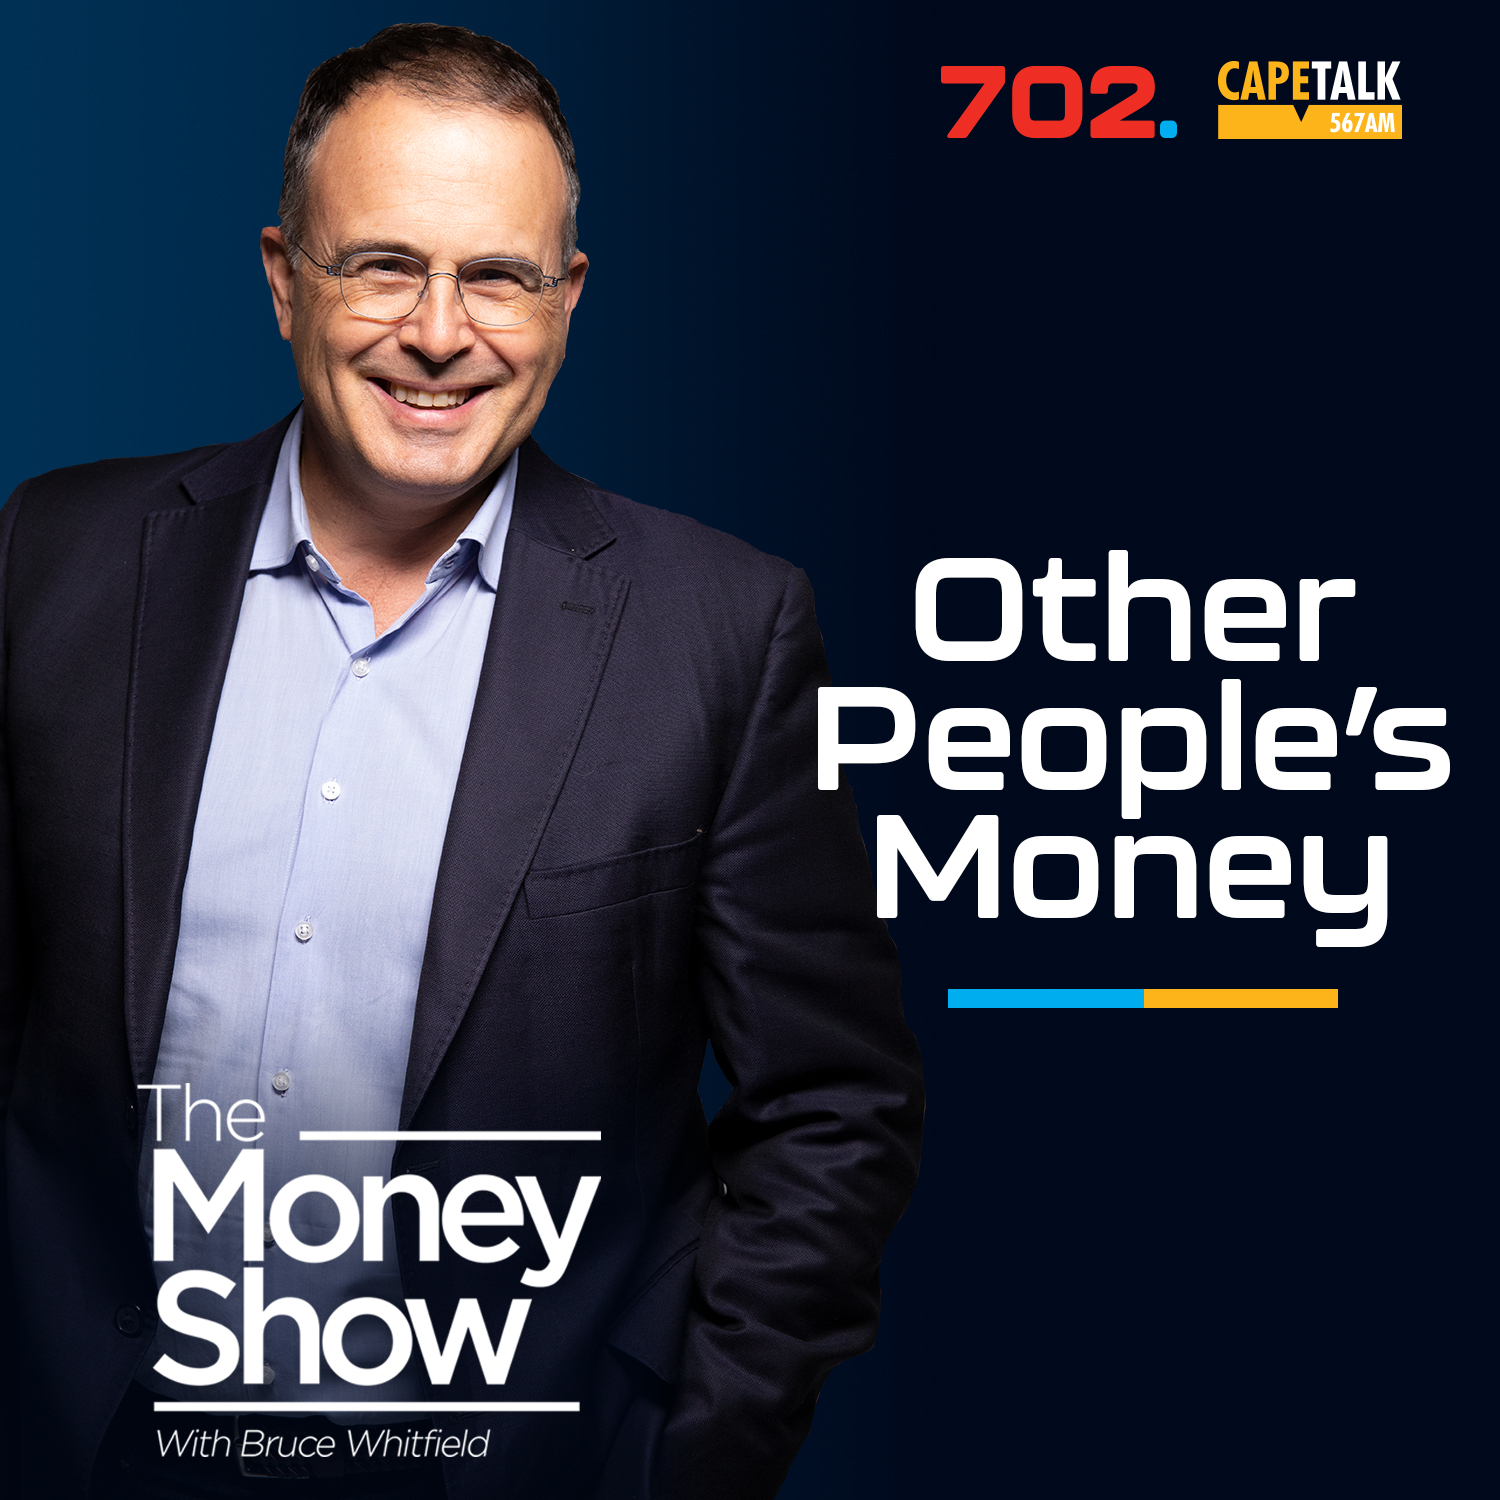 Other People’s Money: Andile Gaelisiwe, Media Personality